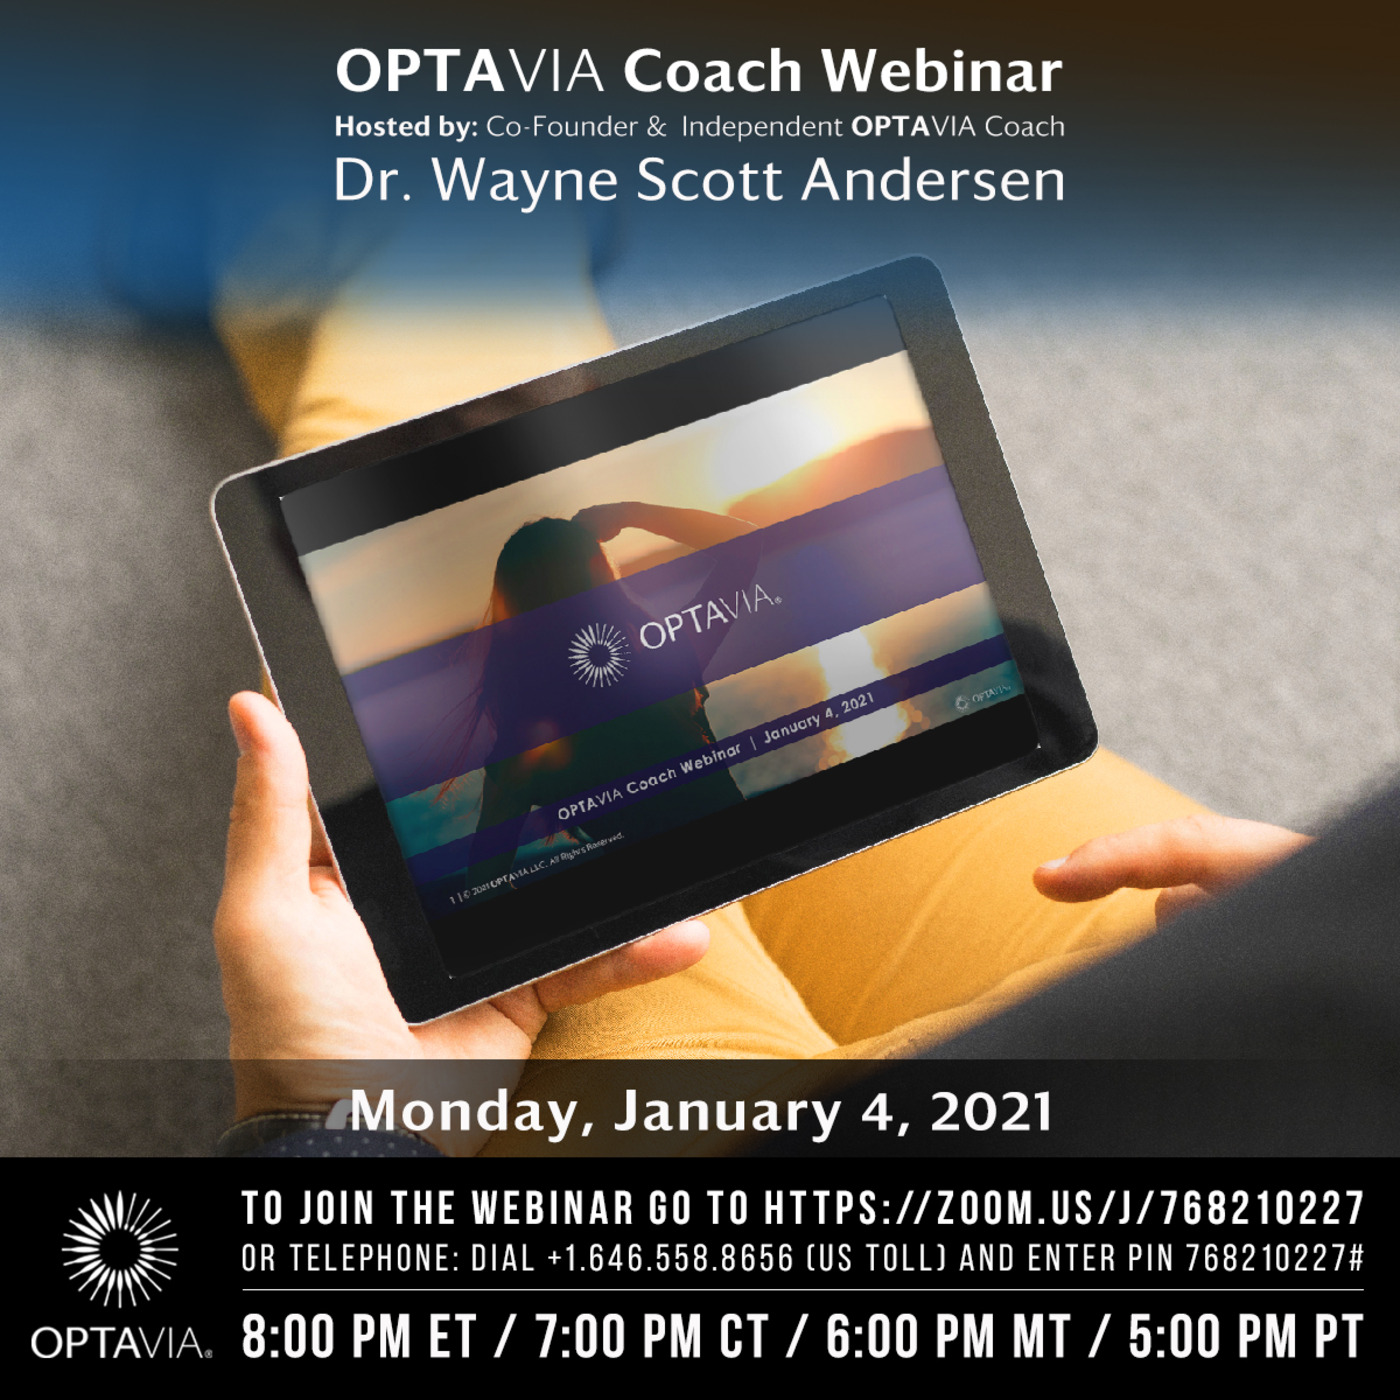 Episode 127: OPTAVIA Coach Webinar